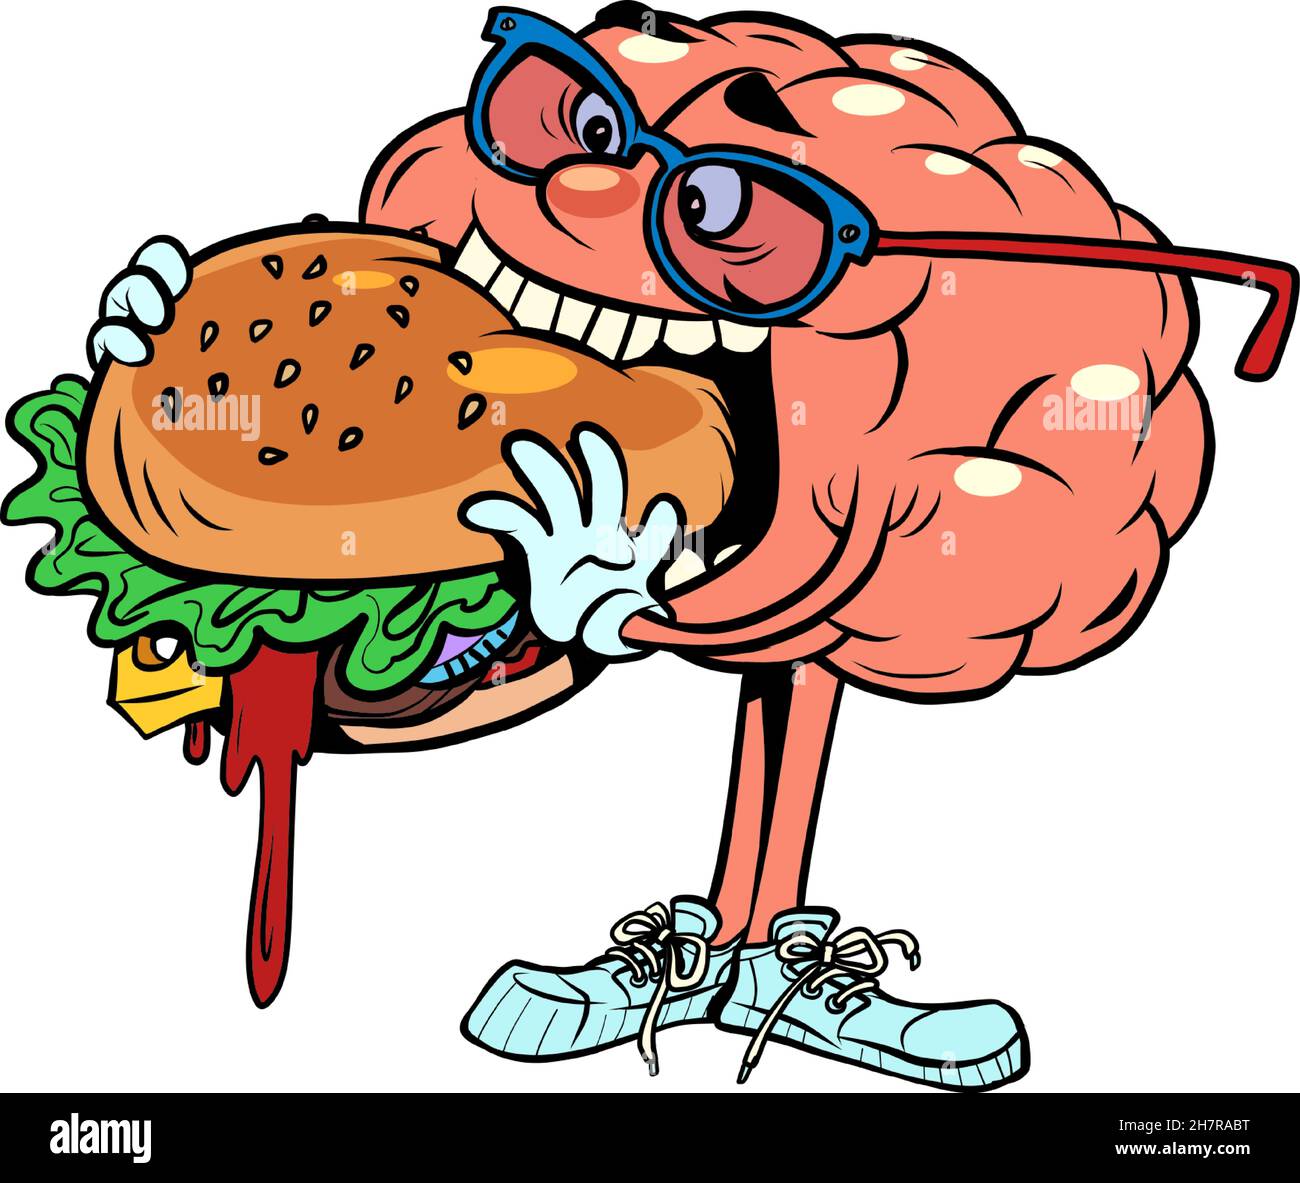 Essen Sie leckere Fast-Food-Burger menschlichen Gehirn Charakter, klug Weise Stock Vektor